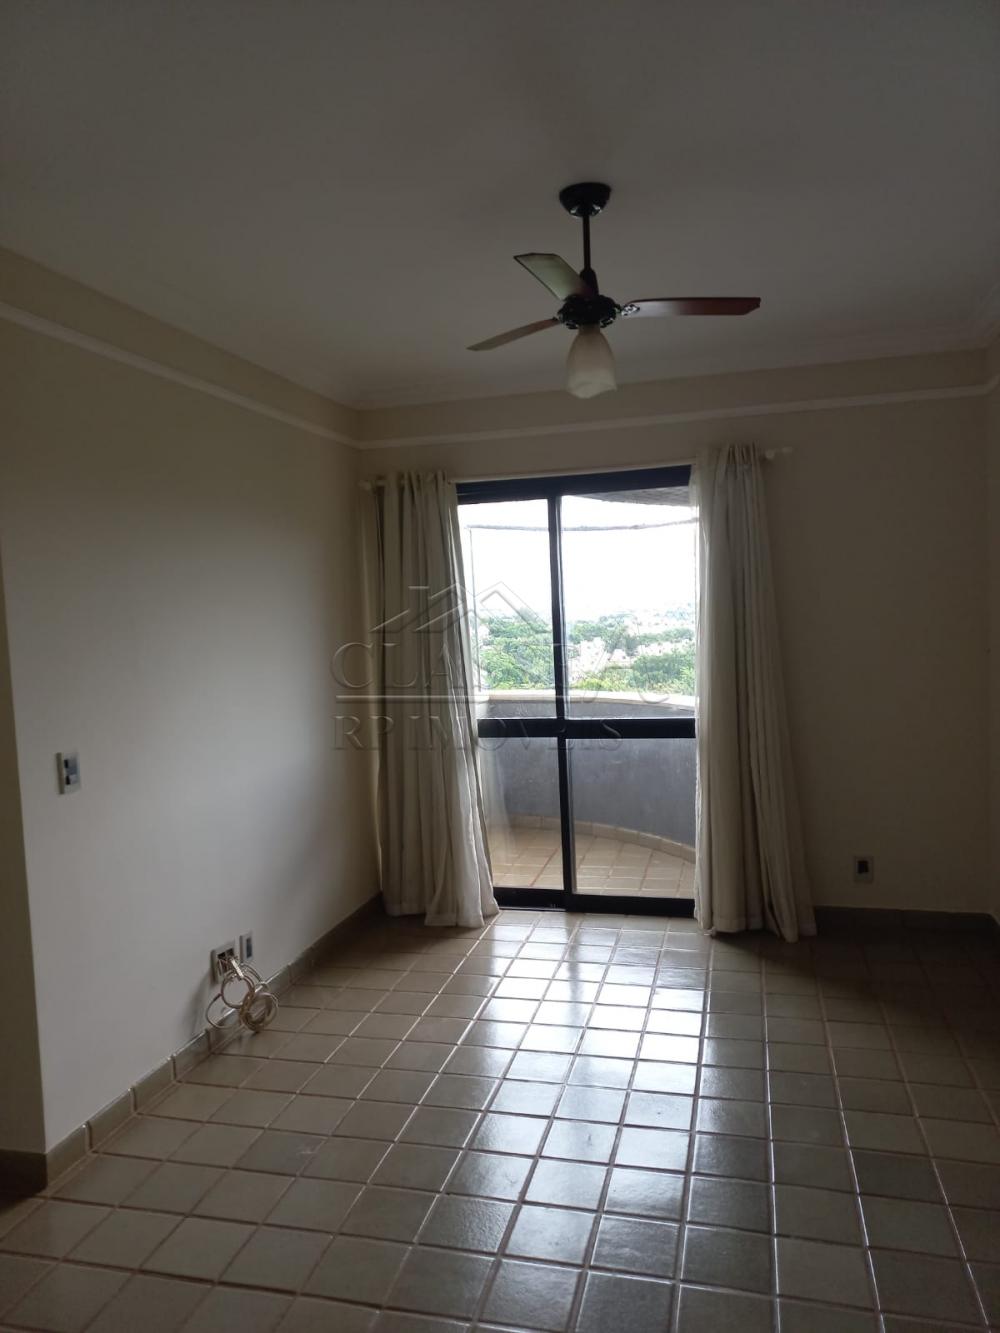 Alugar Apartamento / Padrão em Ribeirão Preto R$ 1.400,00 - Foto 1